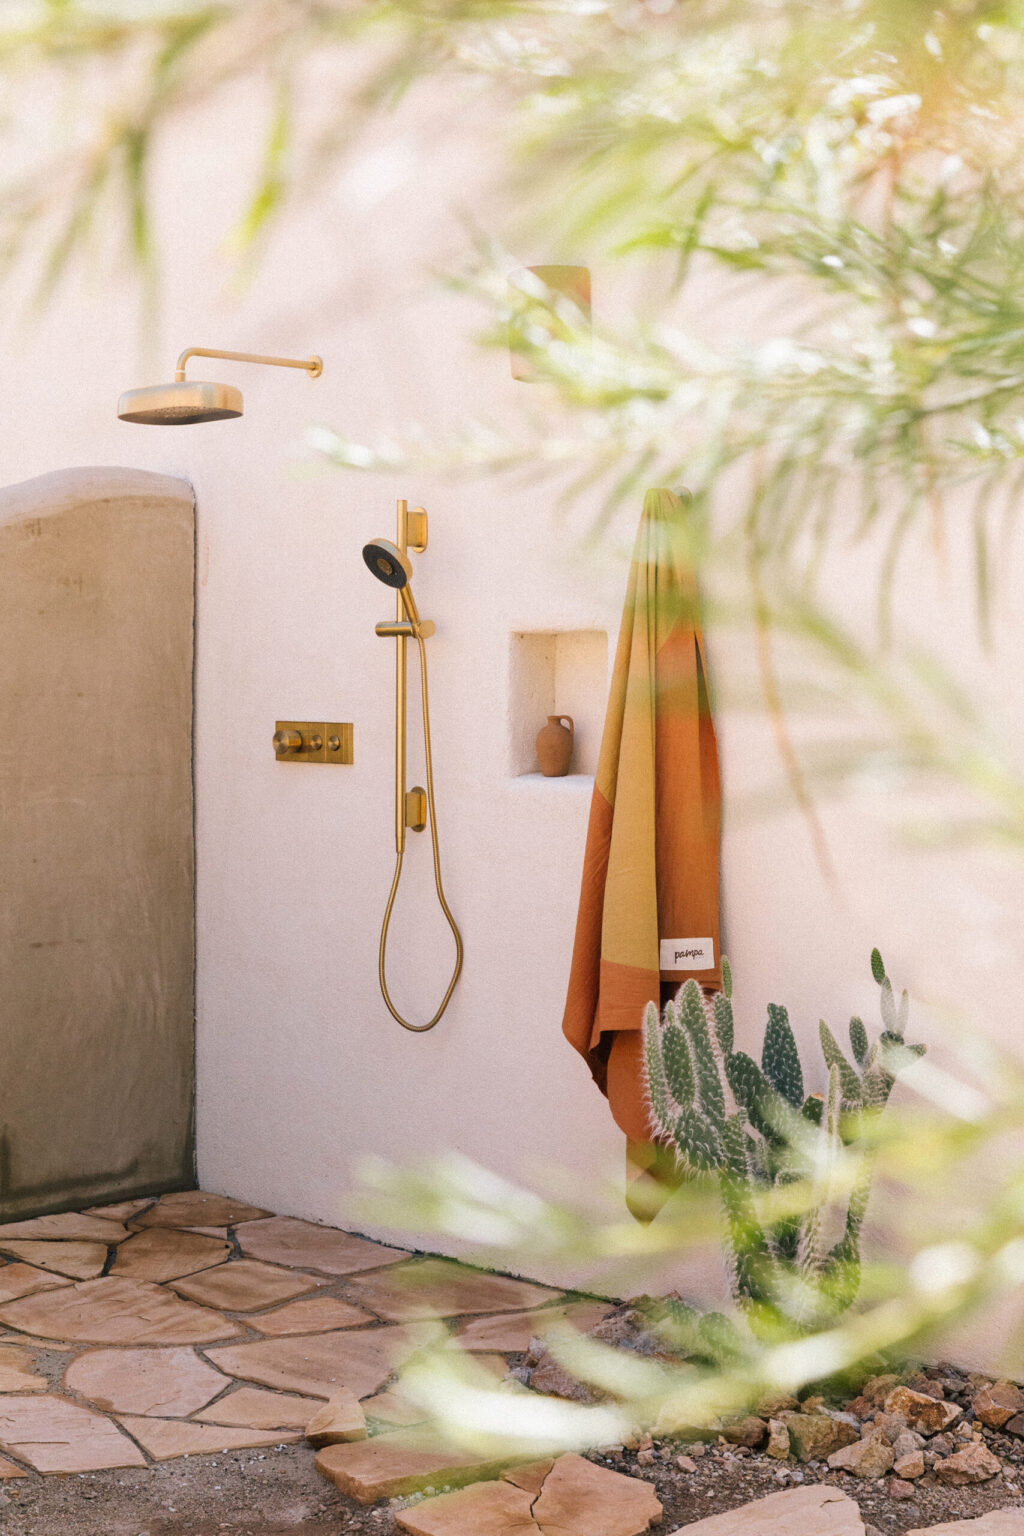 outdoor desert shower - outdoor shower ideas - newdarlings backyard - plaster shower